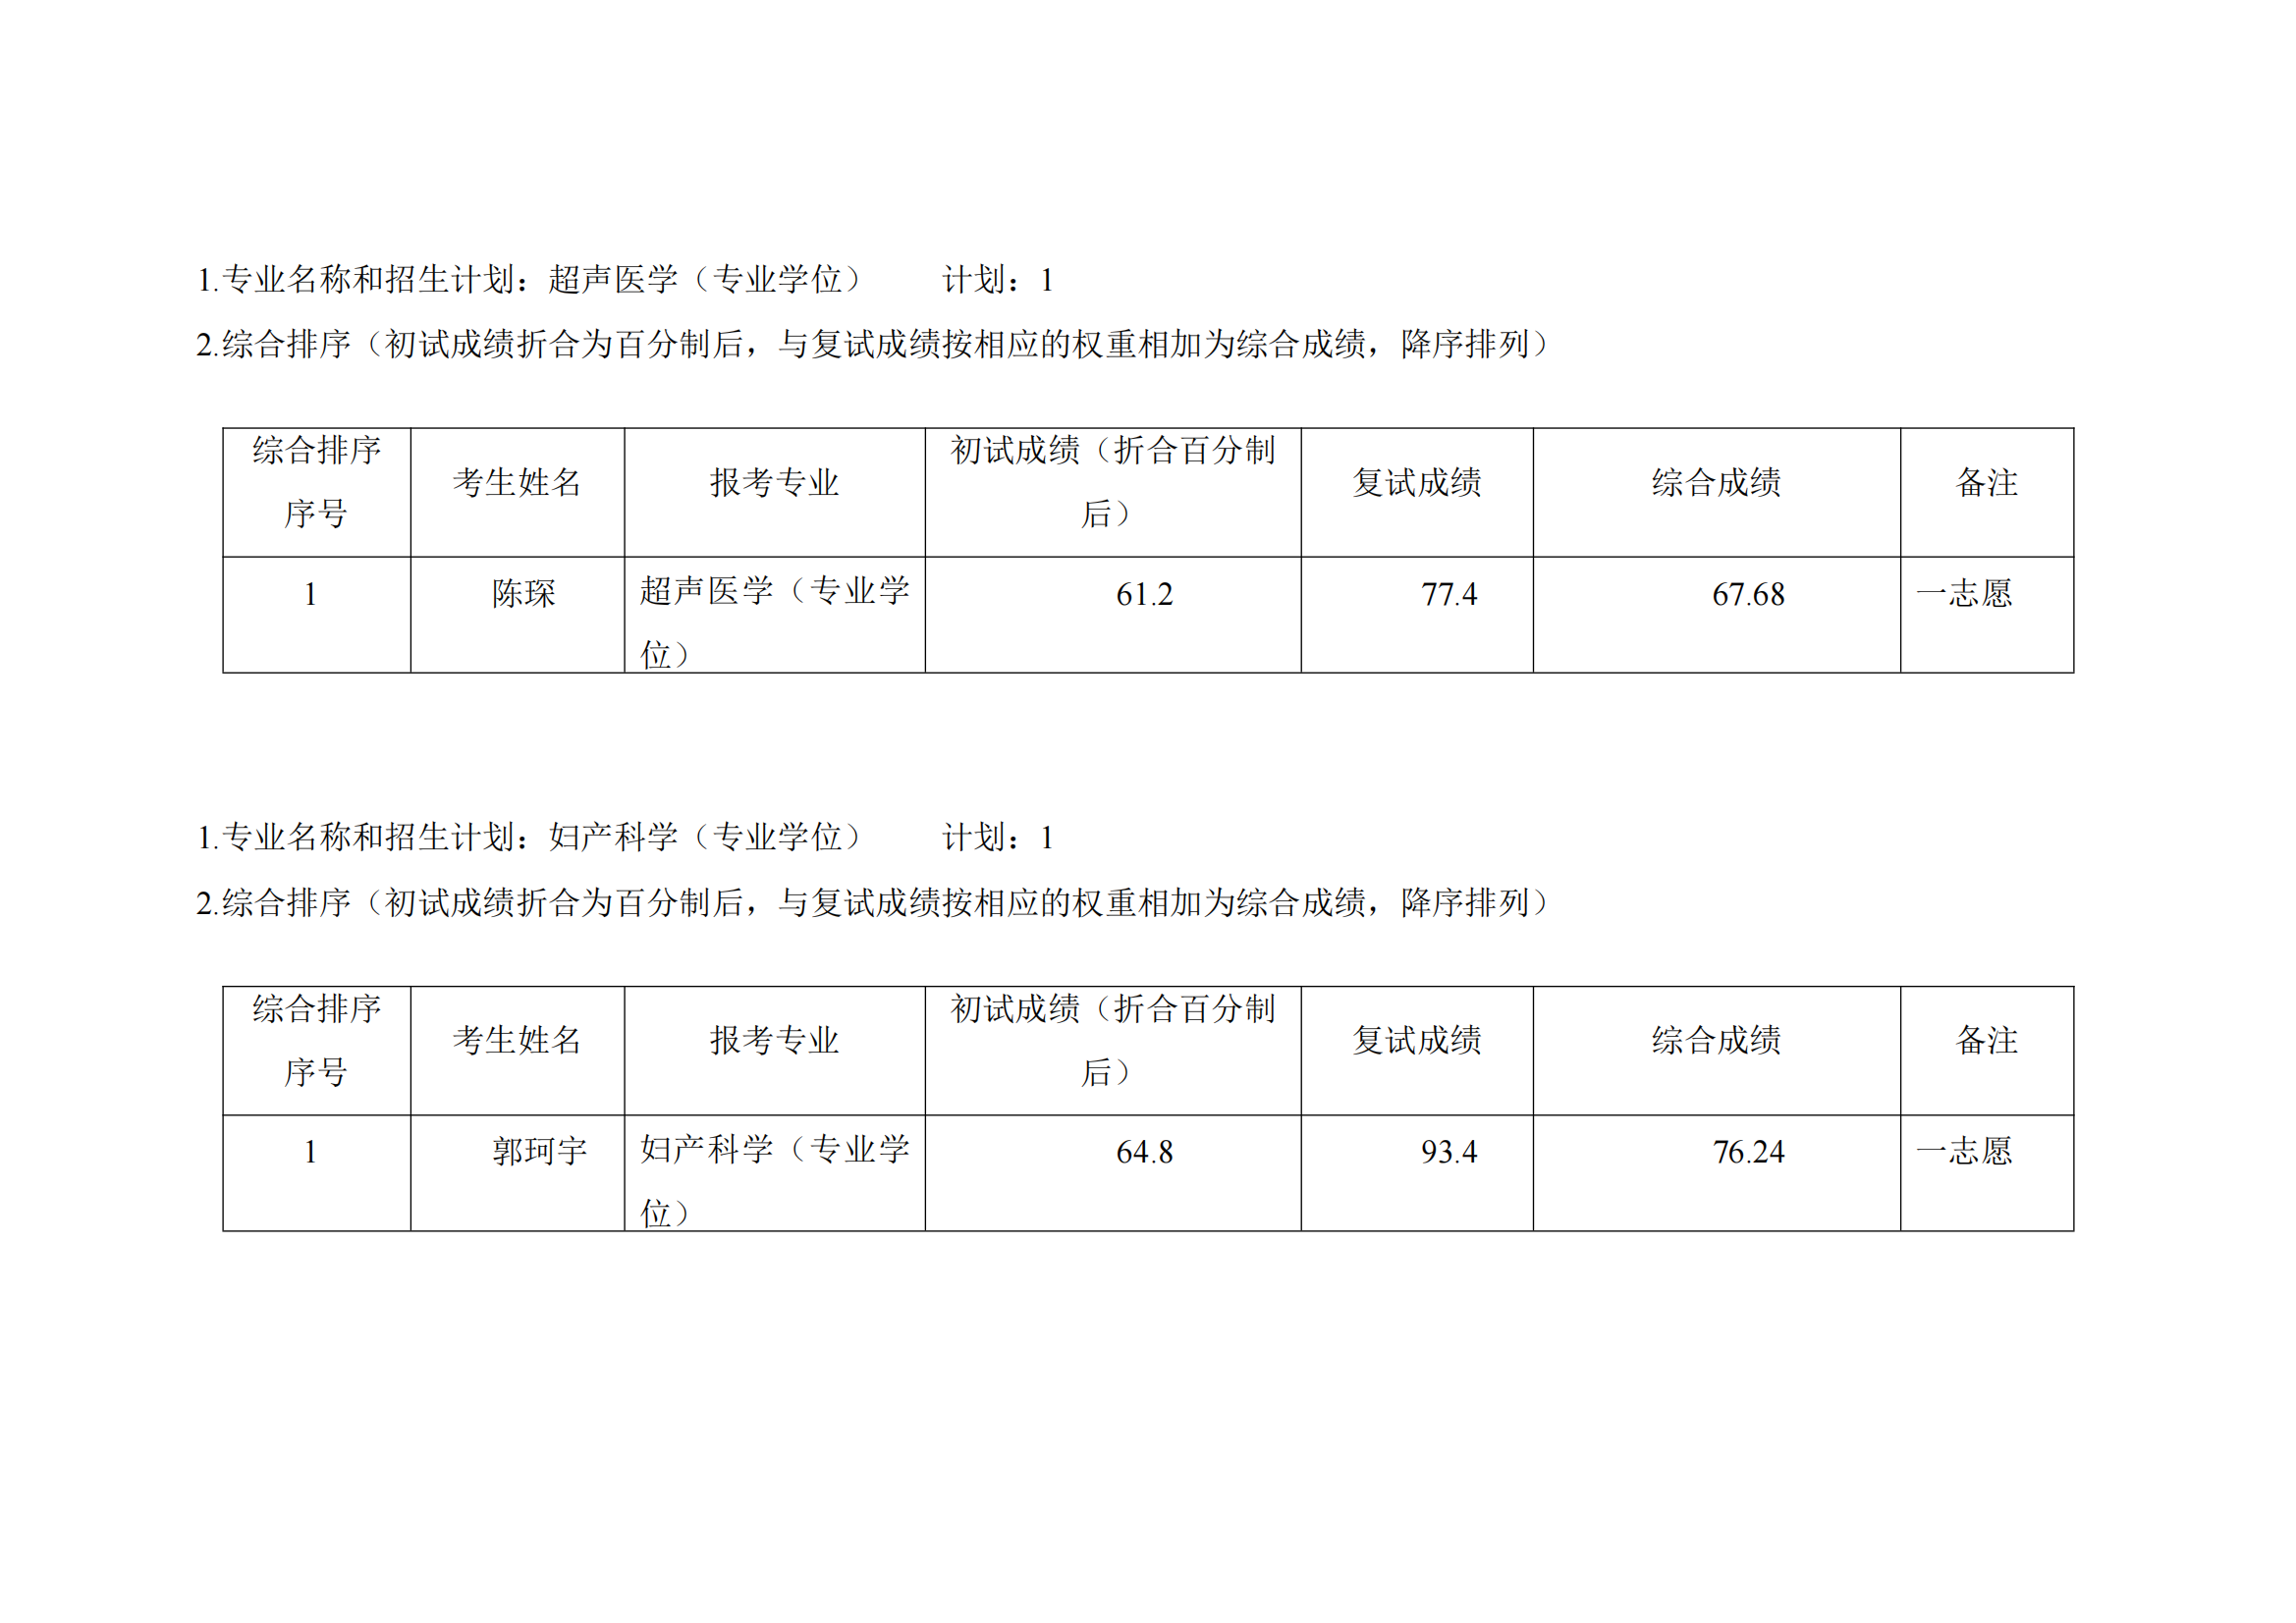 郑州大学第五附属医院 2023 年硕士研究生复试结果综合排序公示表（1）_01.png